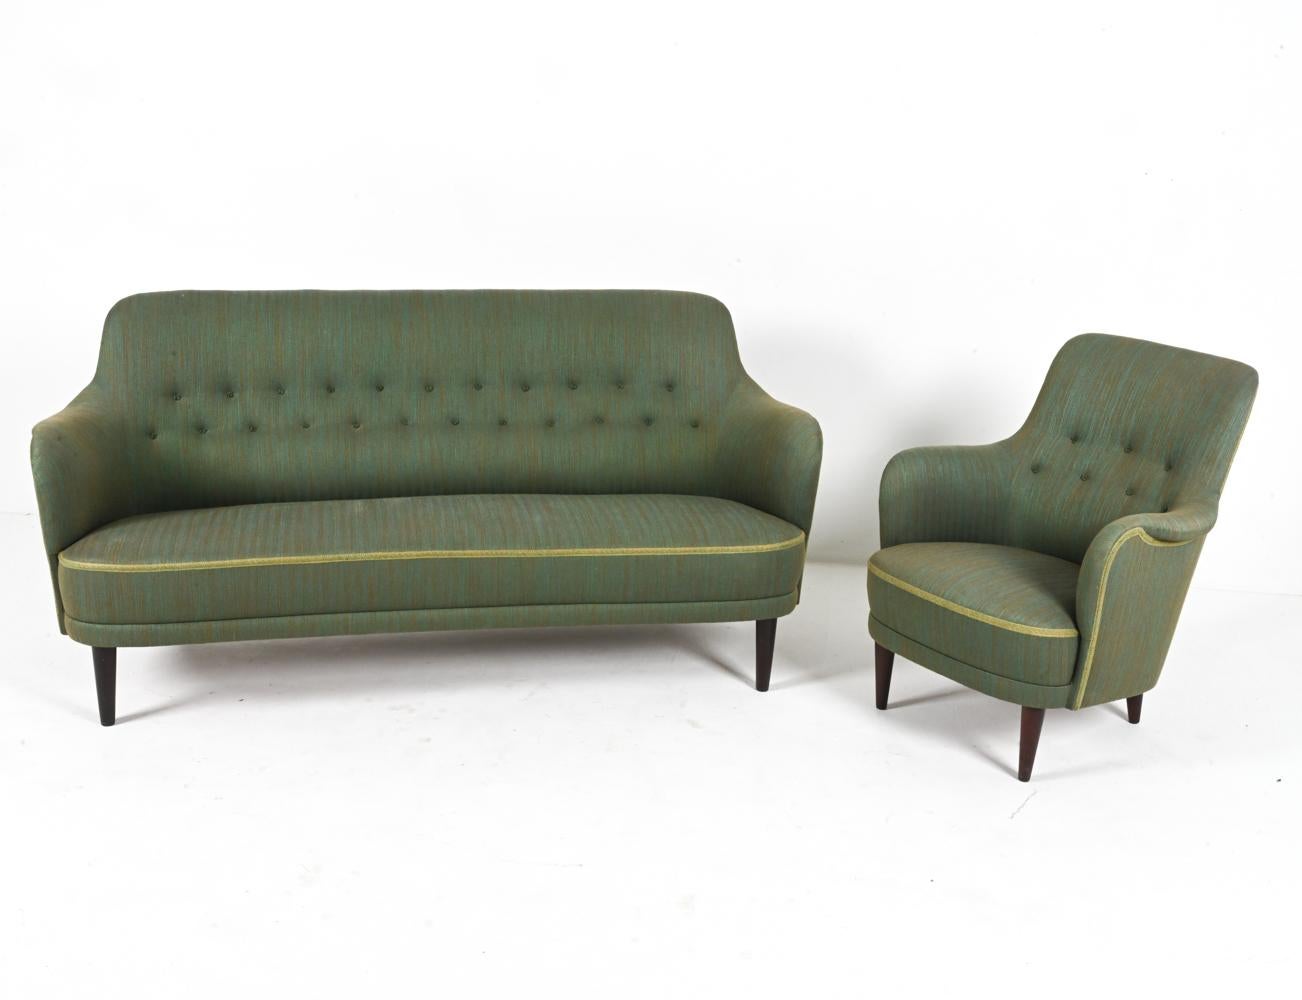 Un ensemble de salon classique du milieu du siècle par le légendaire designer de meubles suédois Carl Malmsten, avec des pieds en bois de hêtre teintés d'acajou et une tapisserie en sergé vert. 

NOTE : Les dimensions indiquées se réfèrent au